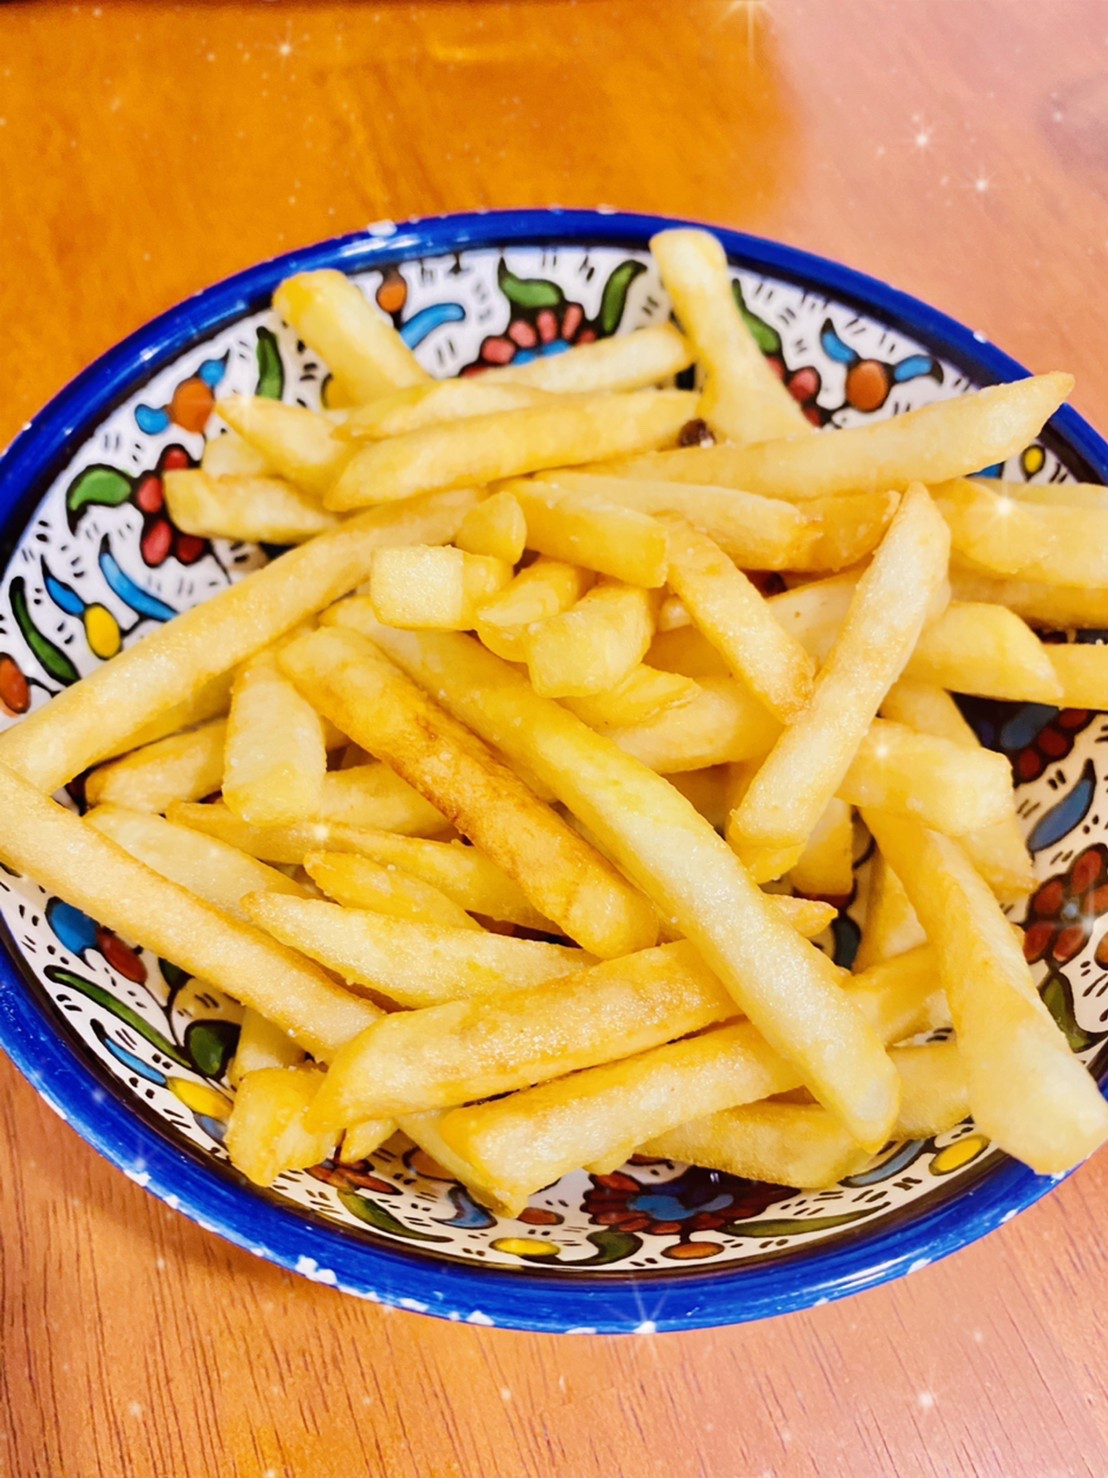 フライドポテト / French fries